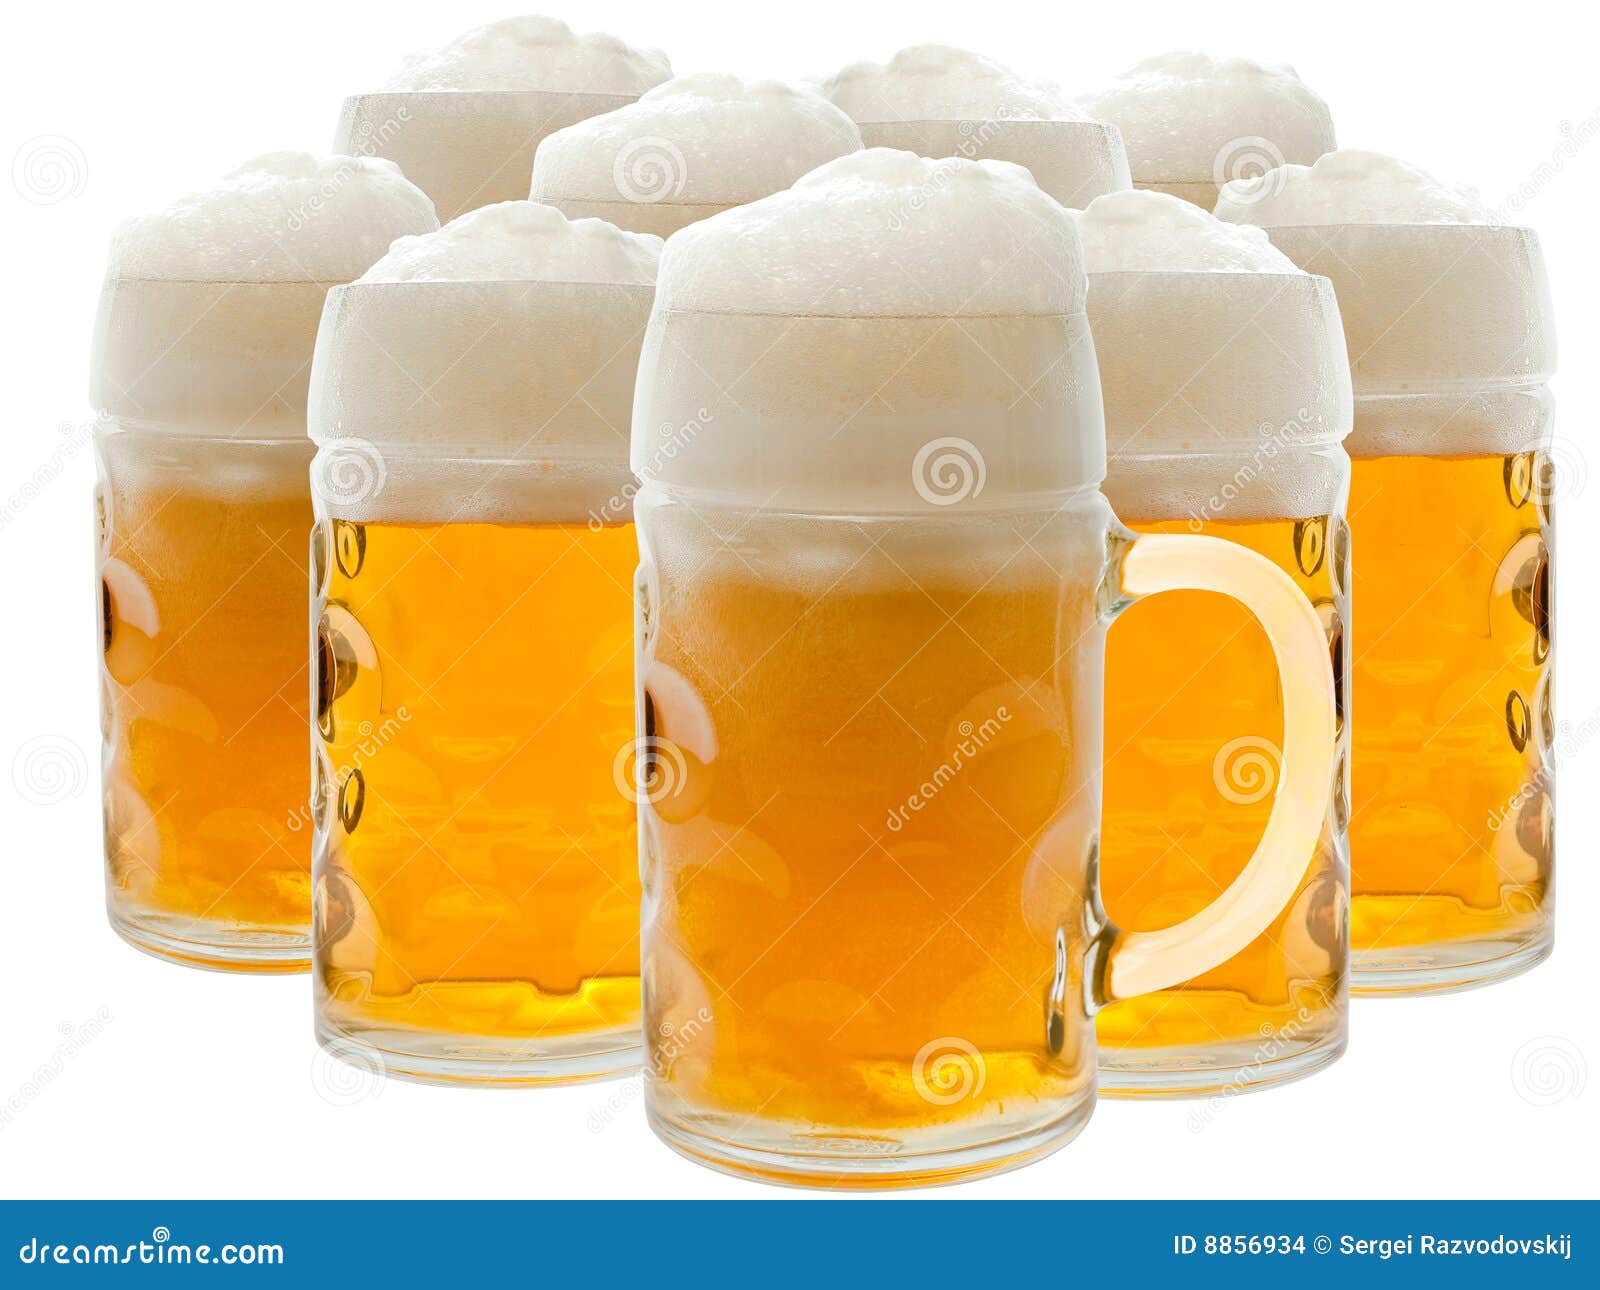 Beer stock photo. Image of alcoholic, amber, celebration - 8856934